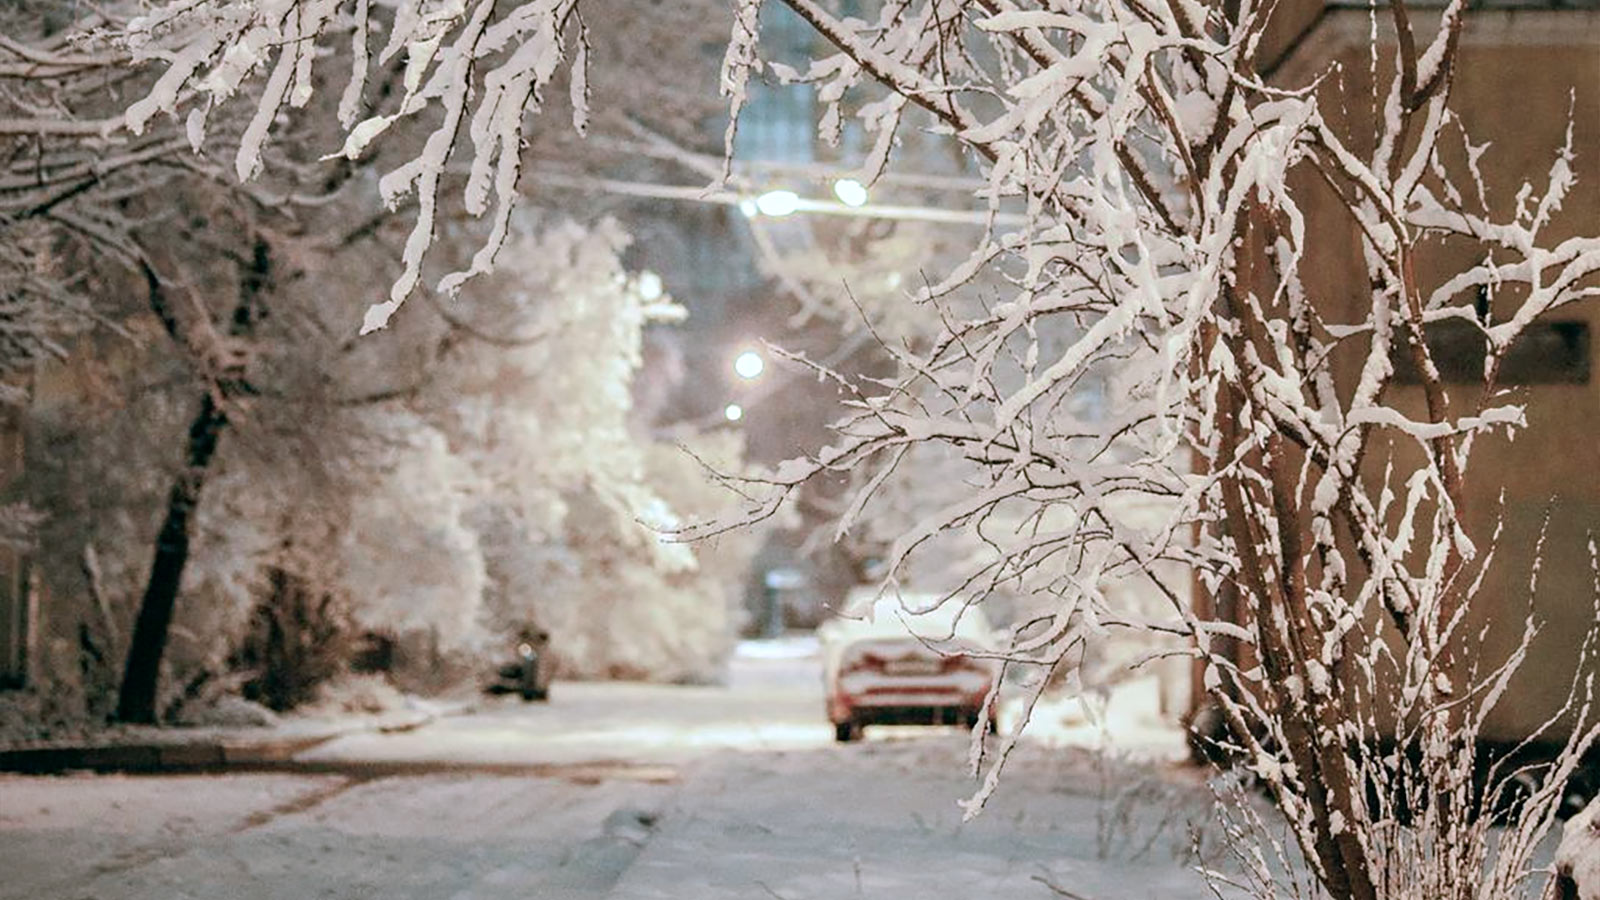 В Северной столице, в ночь с 31 на 1 января синоптики обещают снегопад, а также магнитную бурю, при этом будет плюсовая температура от 0 до +2 градусов.